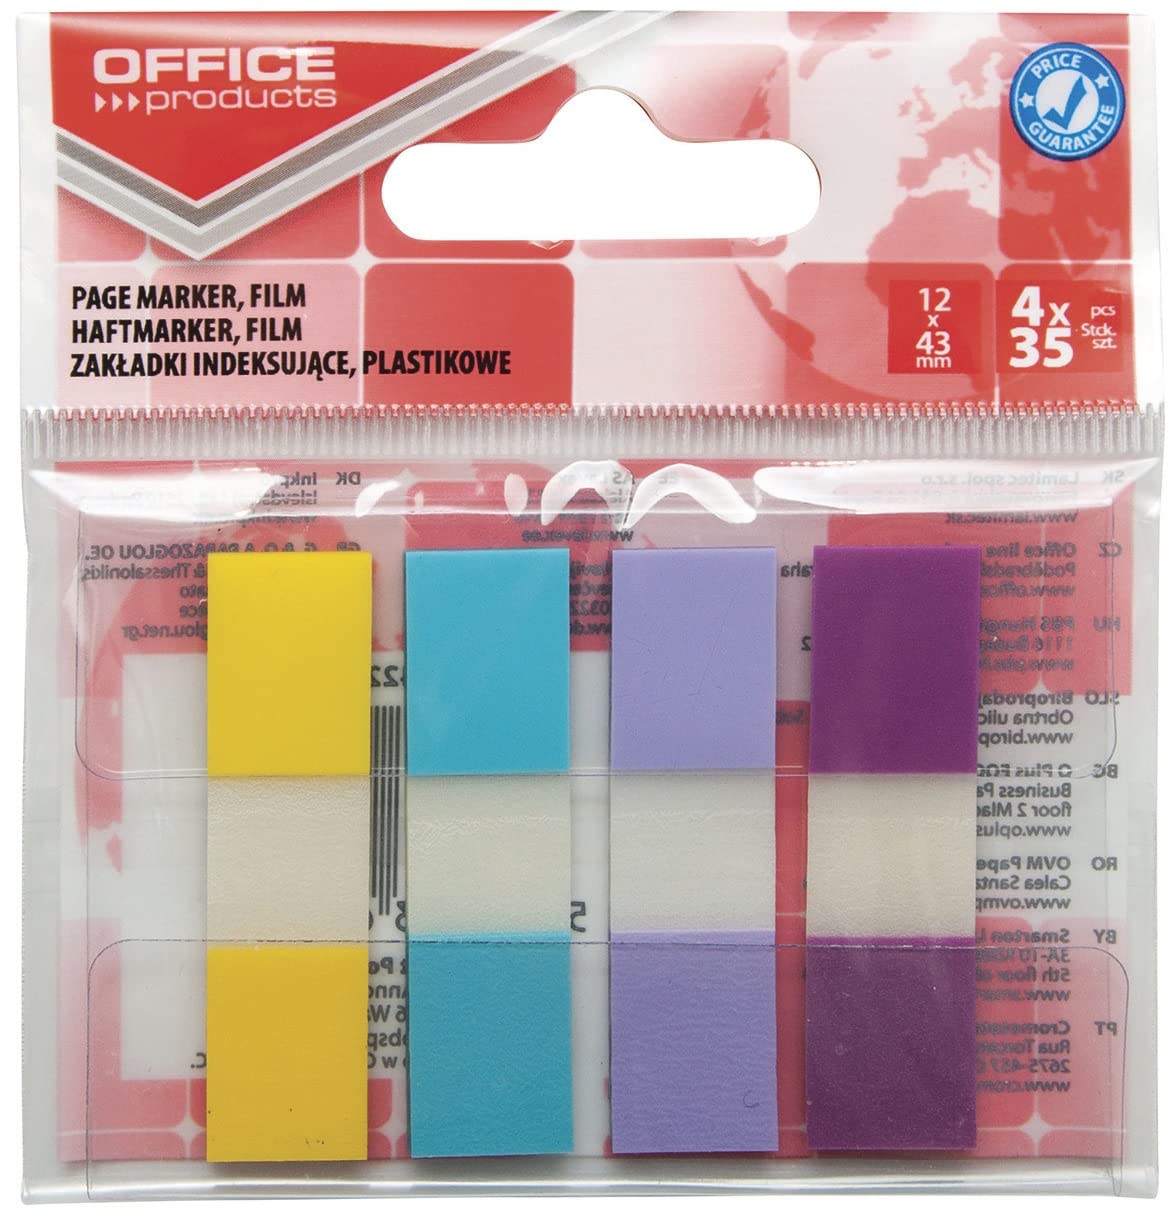 Segnapagina 12x43 mm Office Product blister da 4x35 blocchetti assortiti colori pastello - 14223824-99